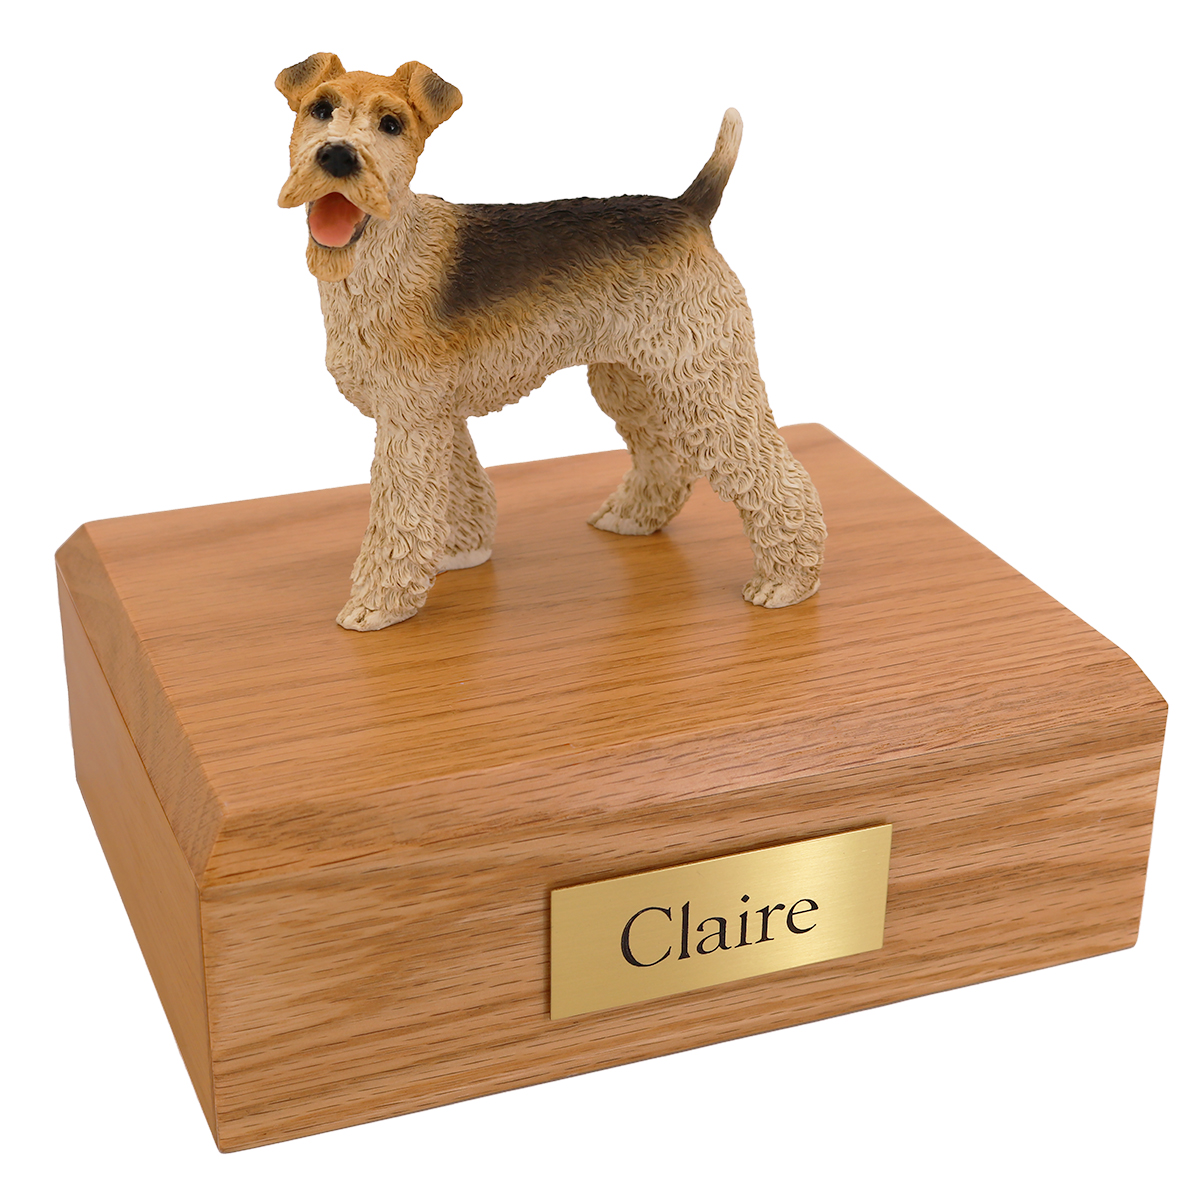 Dog, Wire Fox Terrier, Standing - Figurine Urn